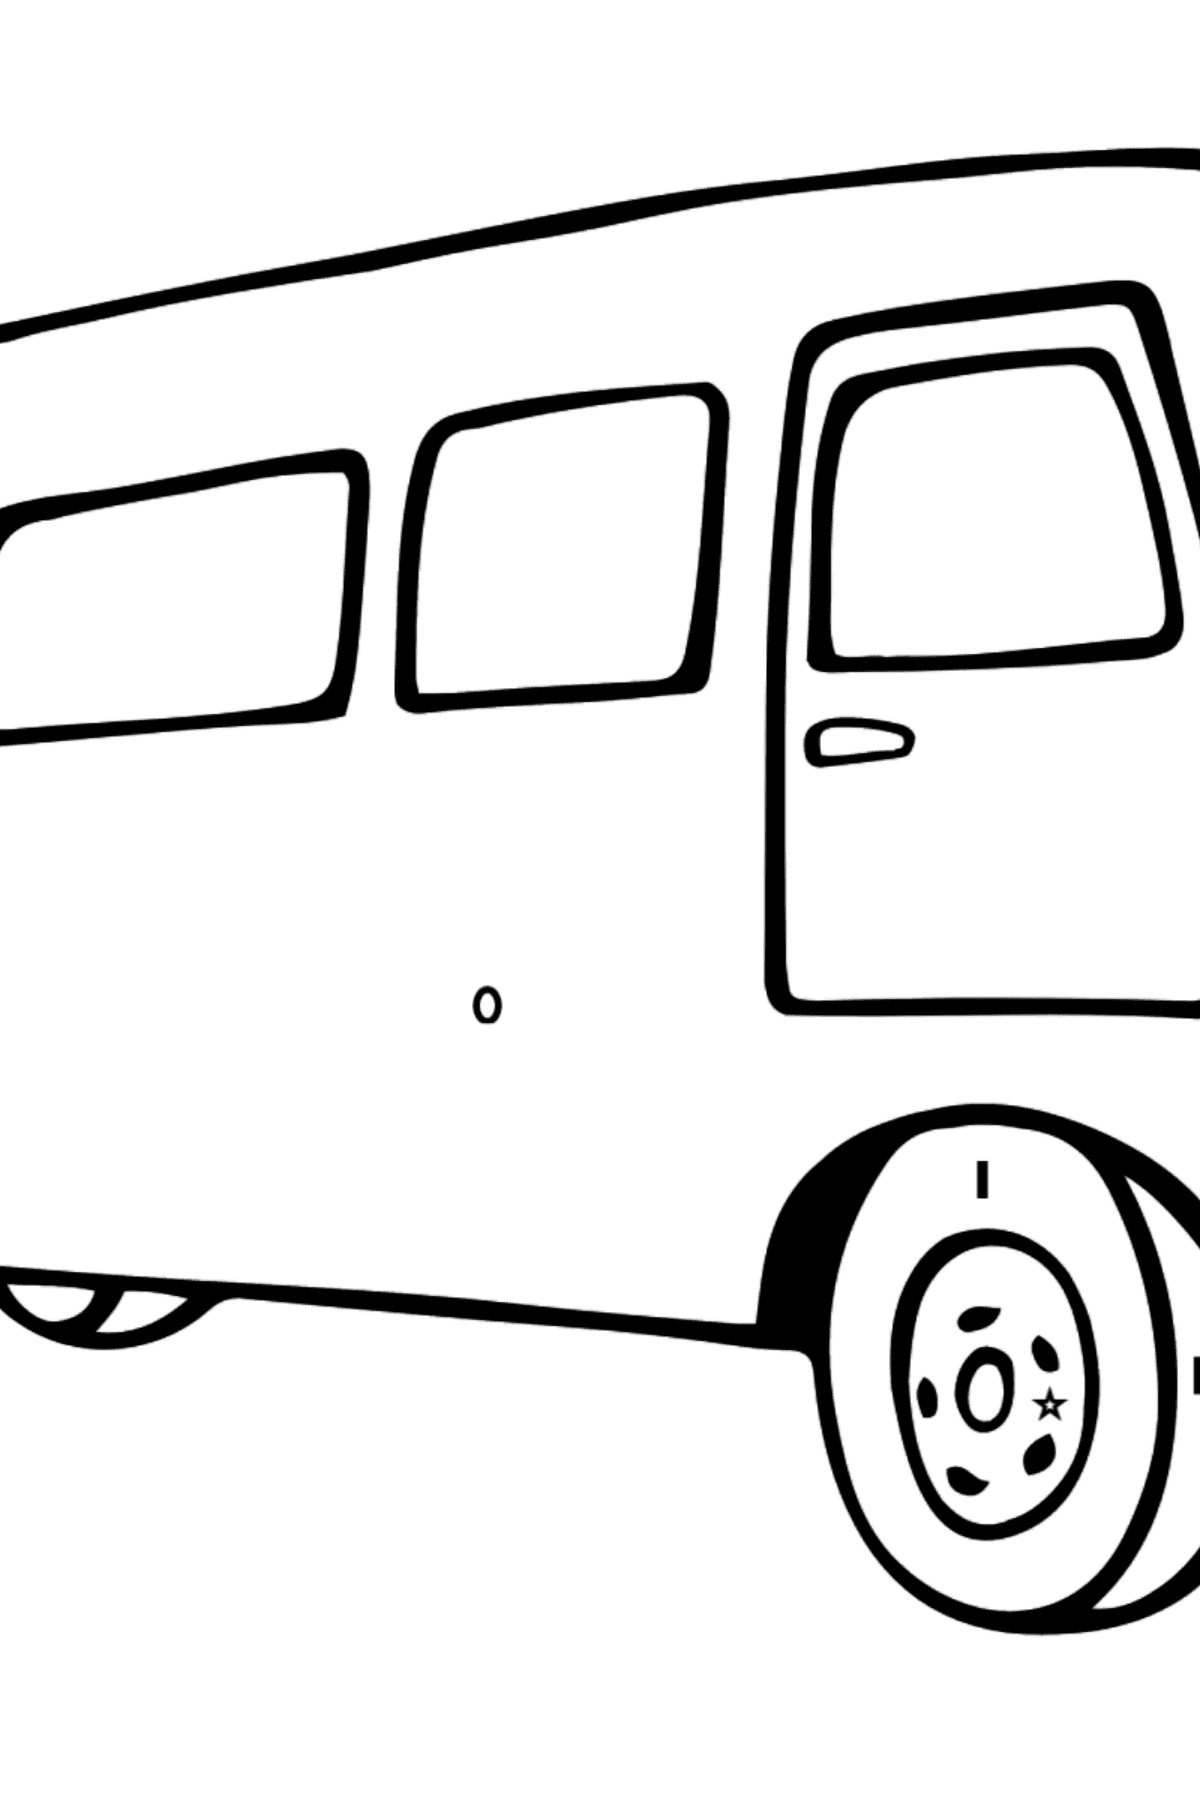 Tegning til fargelegging fin buss - Fargelegge etter symboler og geometriske former for barn